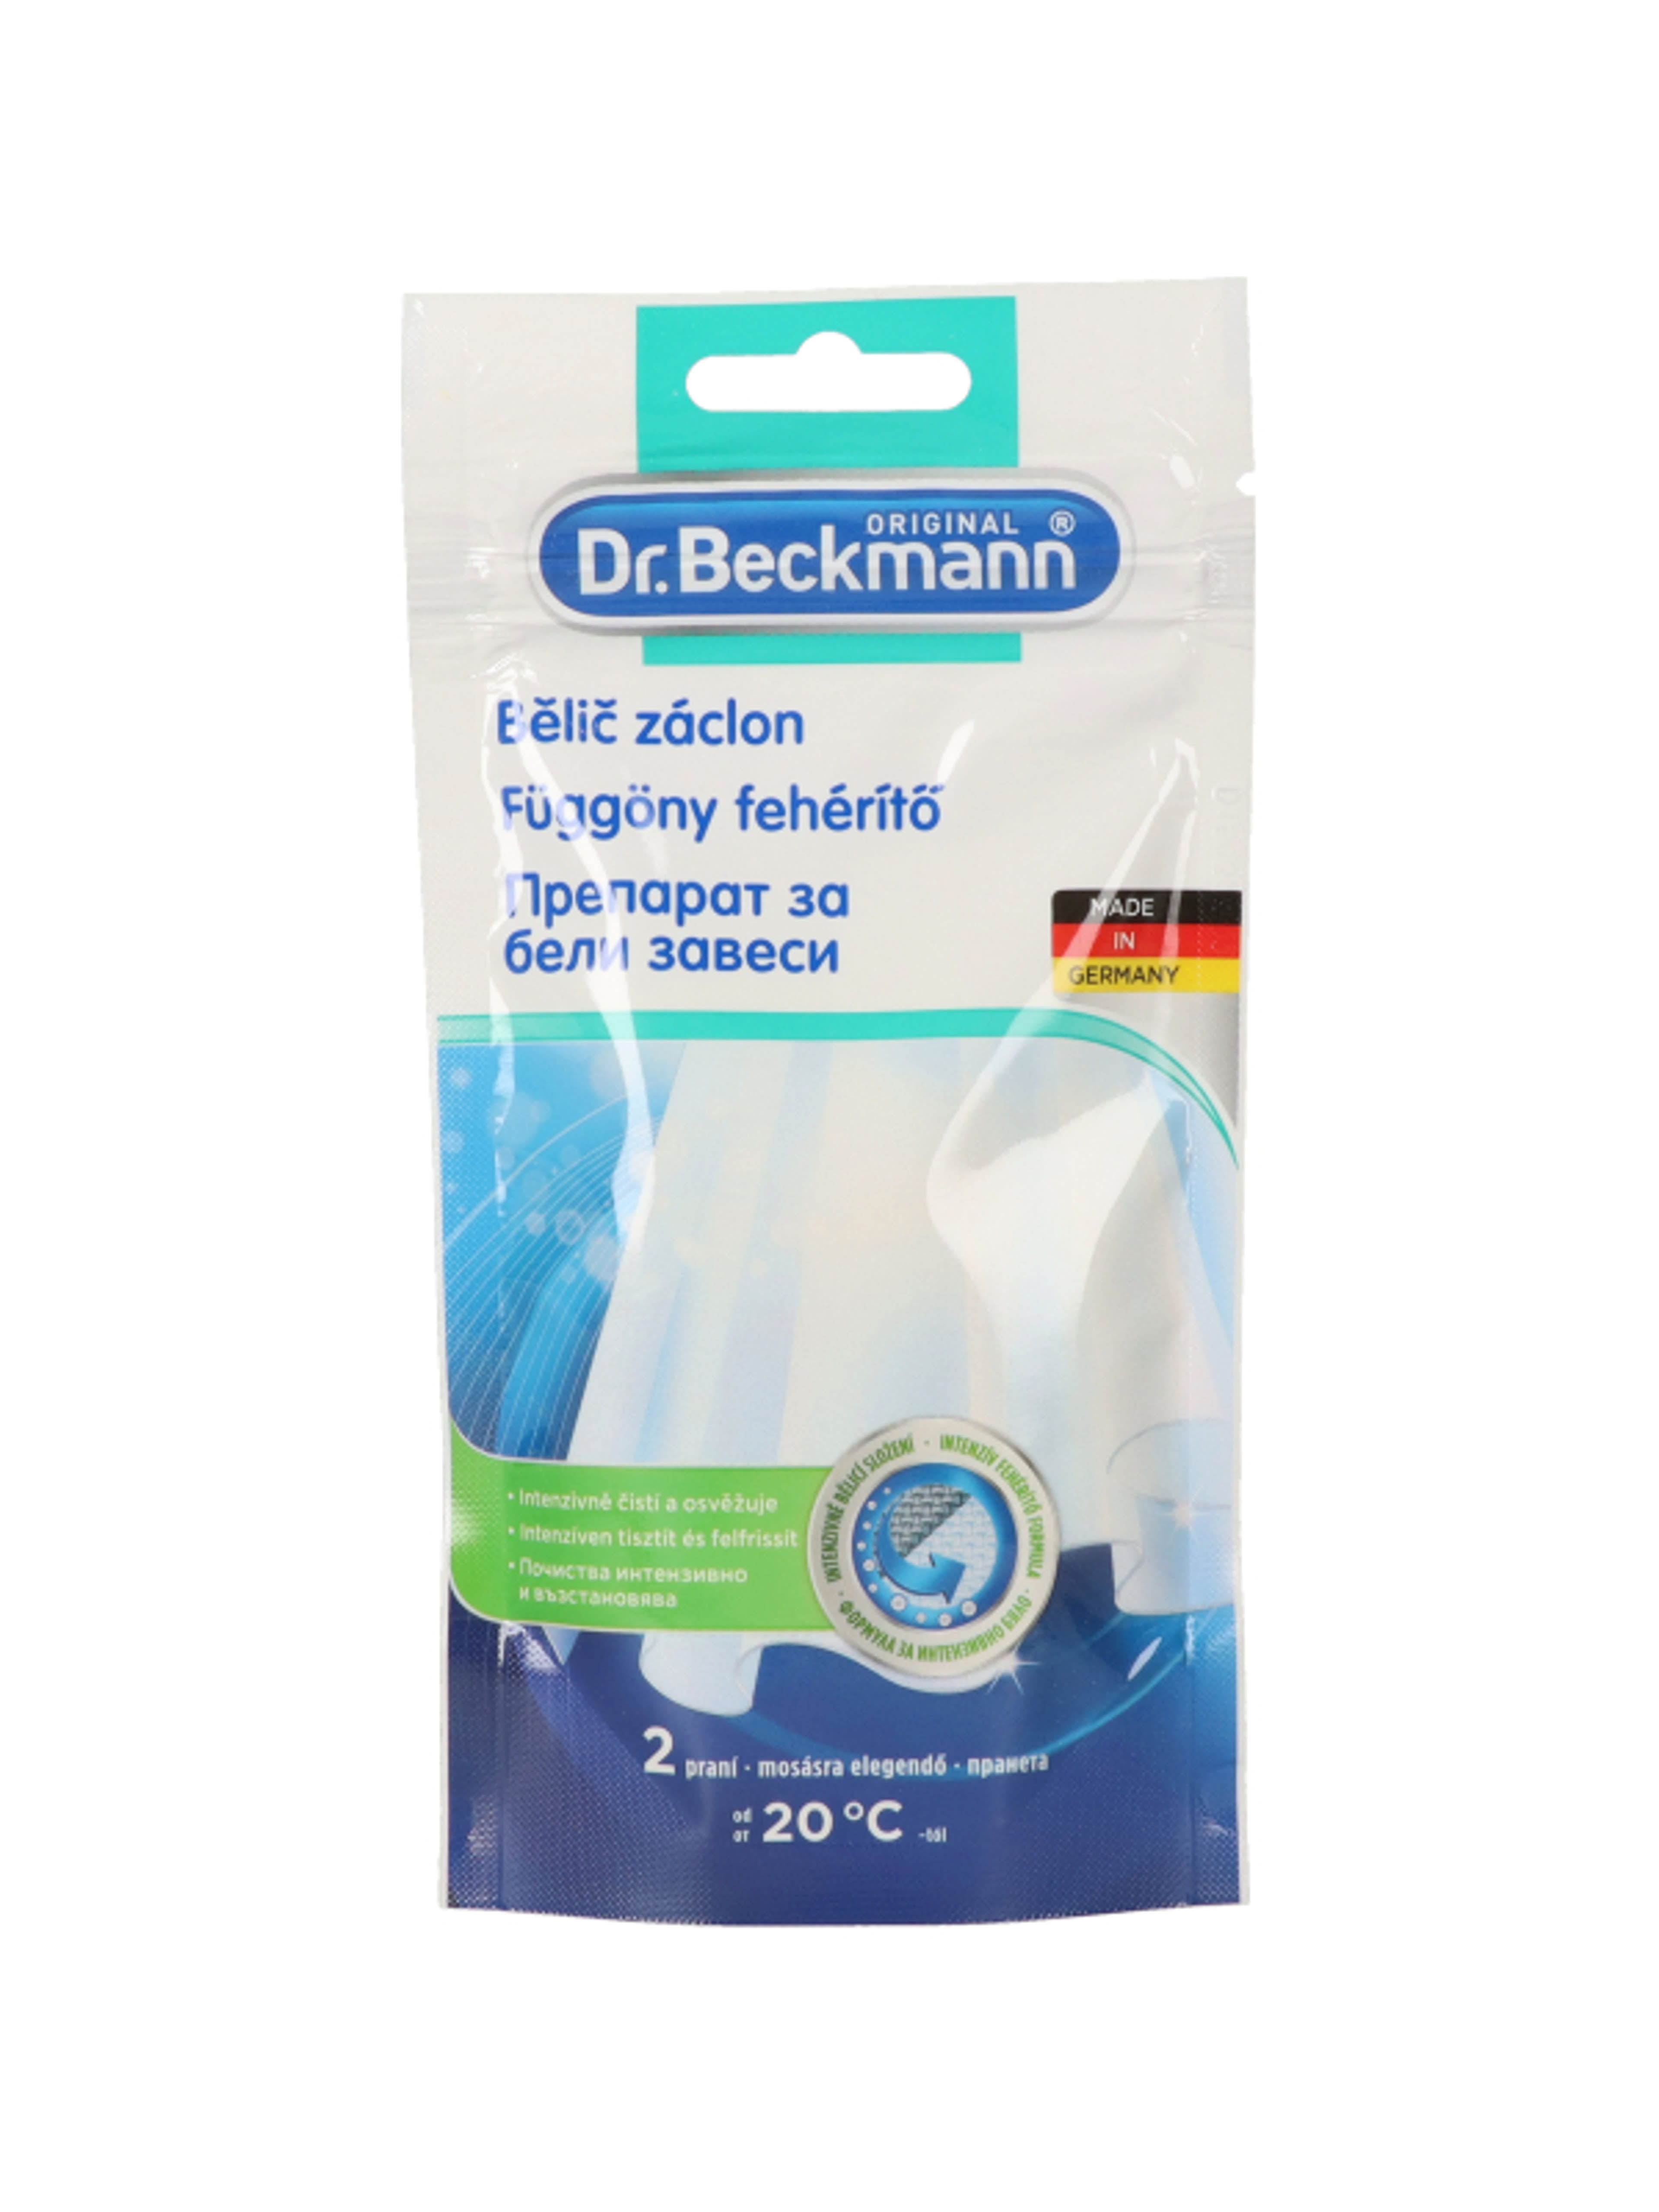 Dr.Beckmann függönyfehérítő - 80 g-1